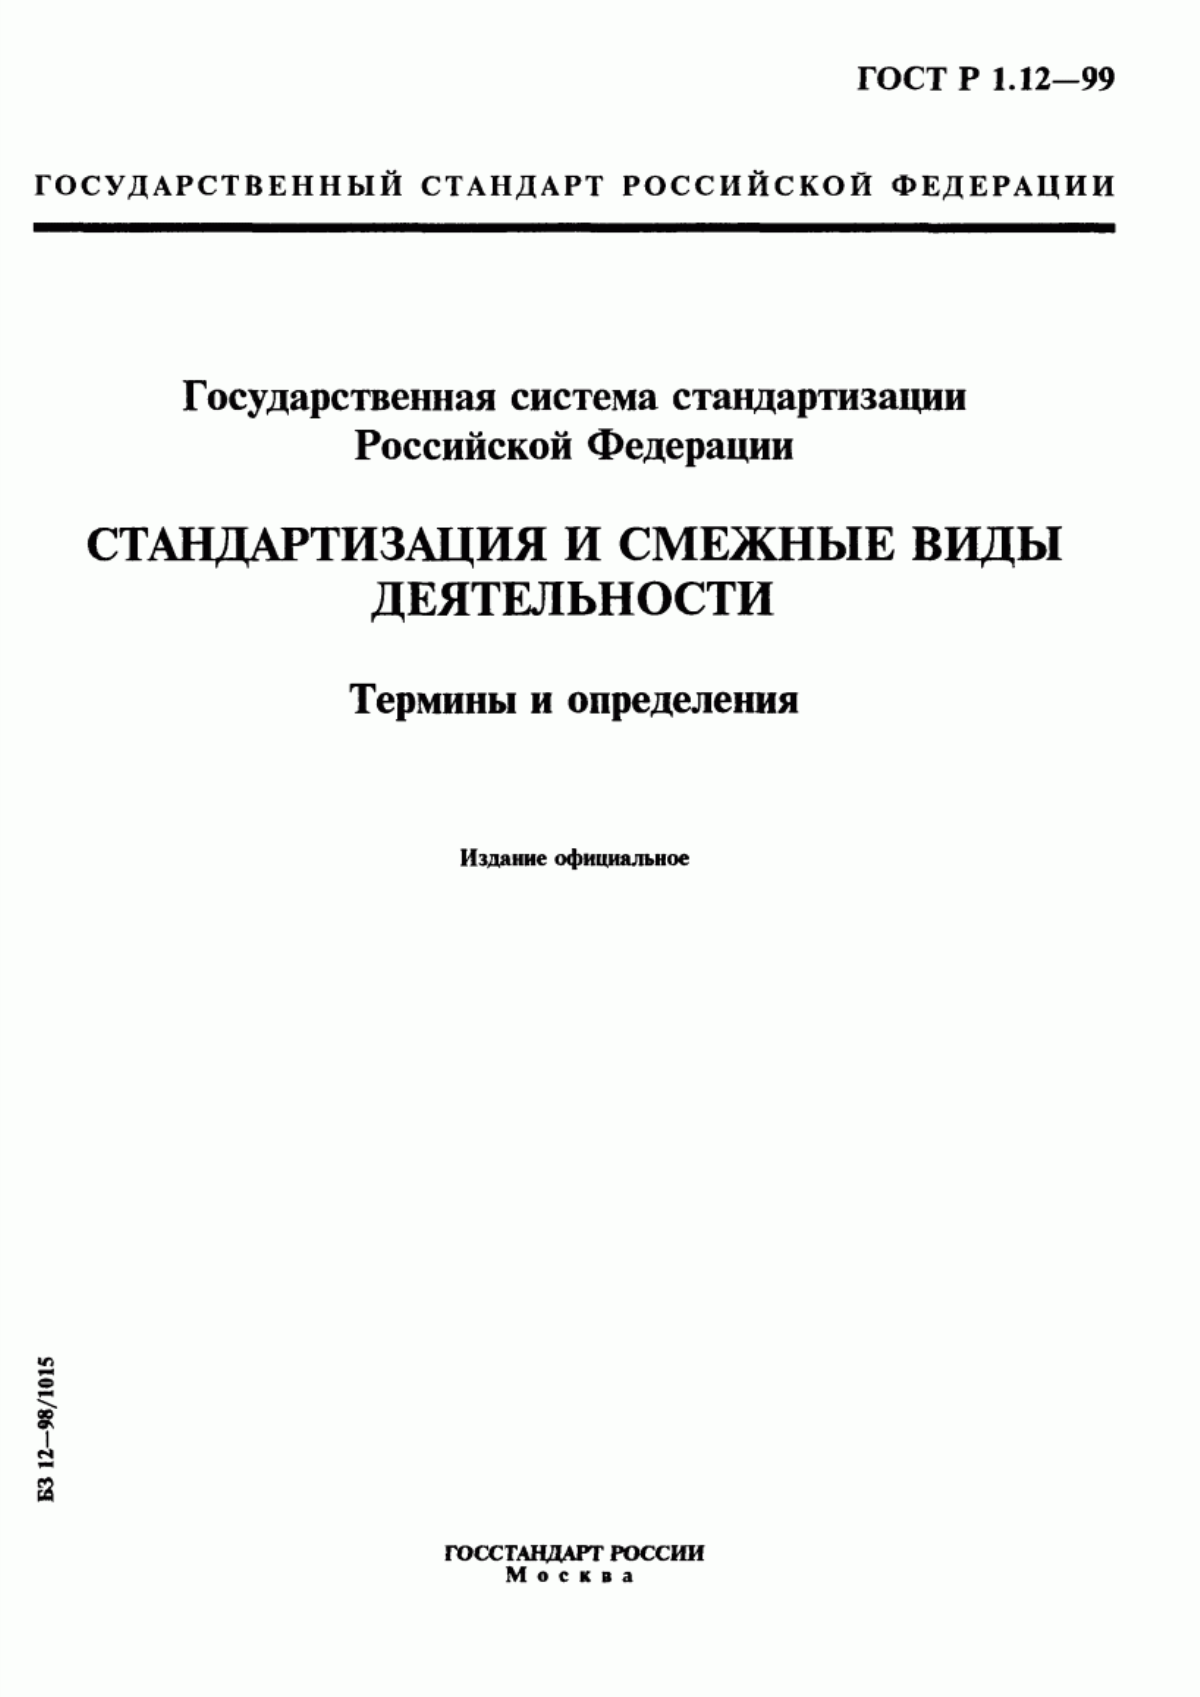 ГОСТ Р 1.12-99 Государственная система стандартизации Российской Федерации. Стандартизация и смежные виды деятельности. Термины и определения